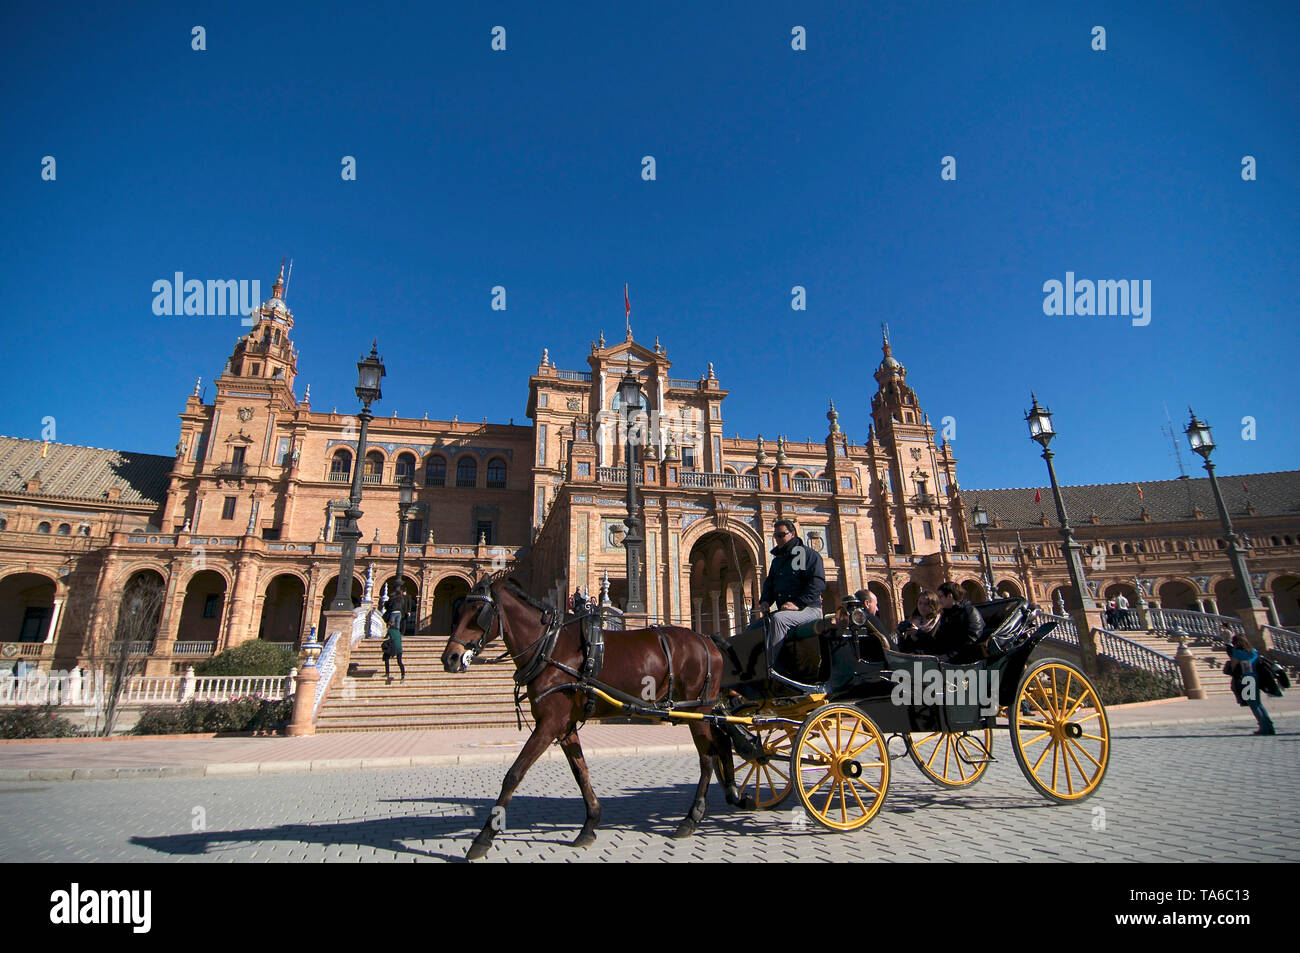 Séville, Andalousie, Espagne - 4 janvier 2015 : Belle vue sur la célèbre Plaza de España situé à Séville. Le bâtiment a été construit en 1928 à Moori Banque D'Images